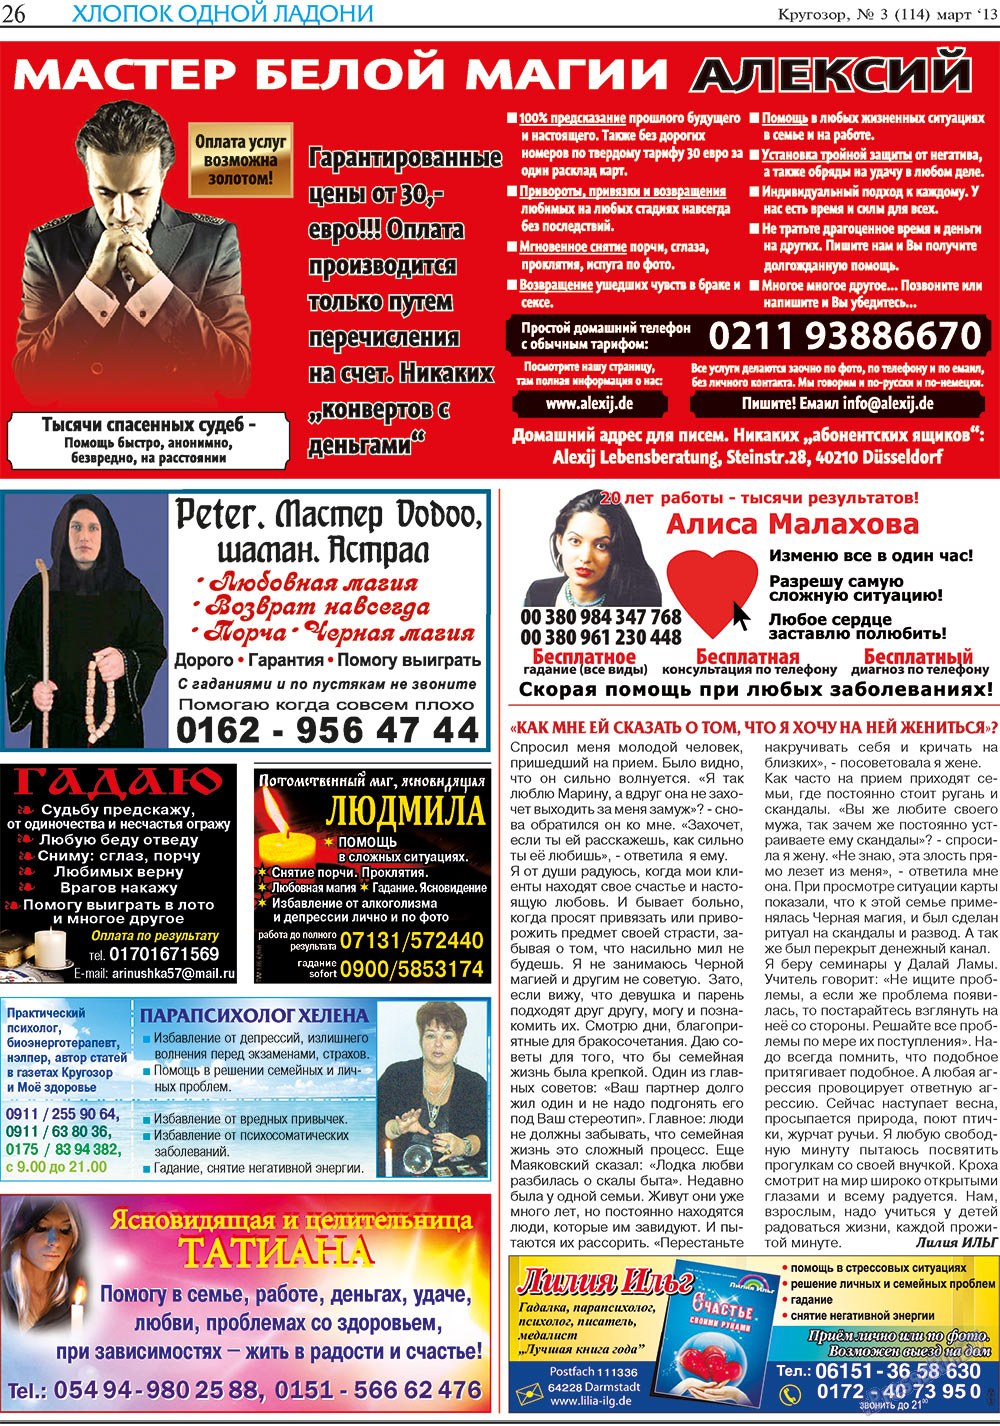 Кругозор, газета. 2013 №3 стр.26